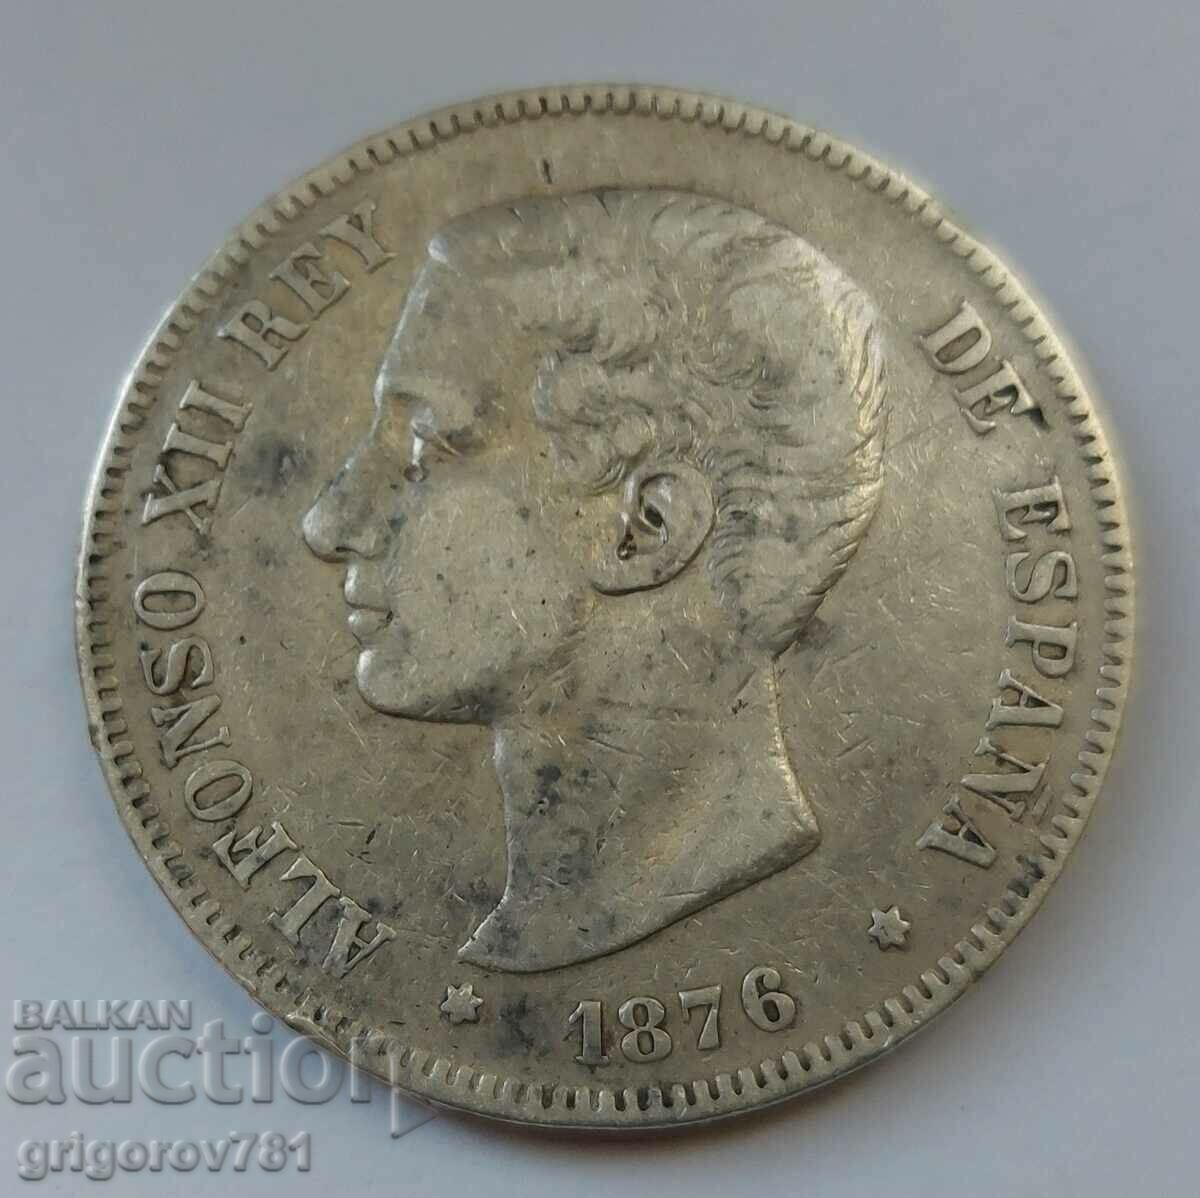 5 pesetas silver Spain 1878 - silver coin